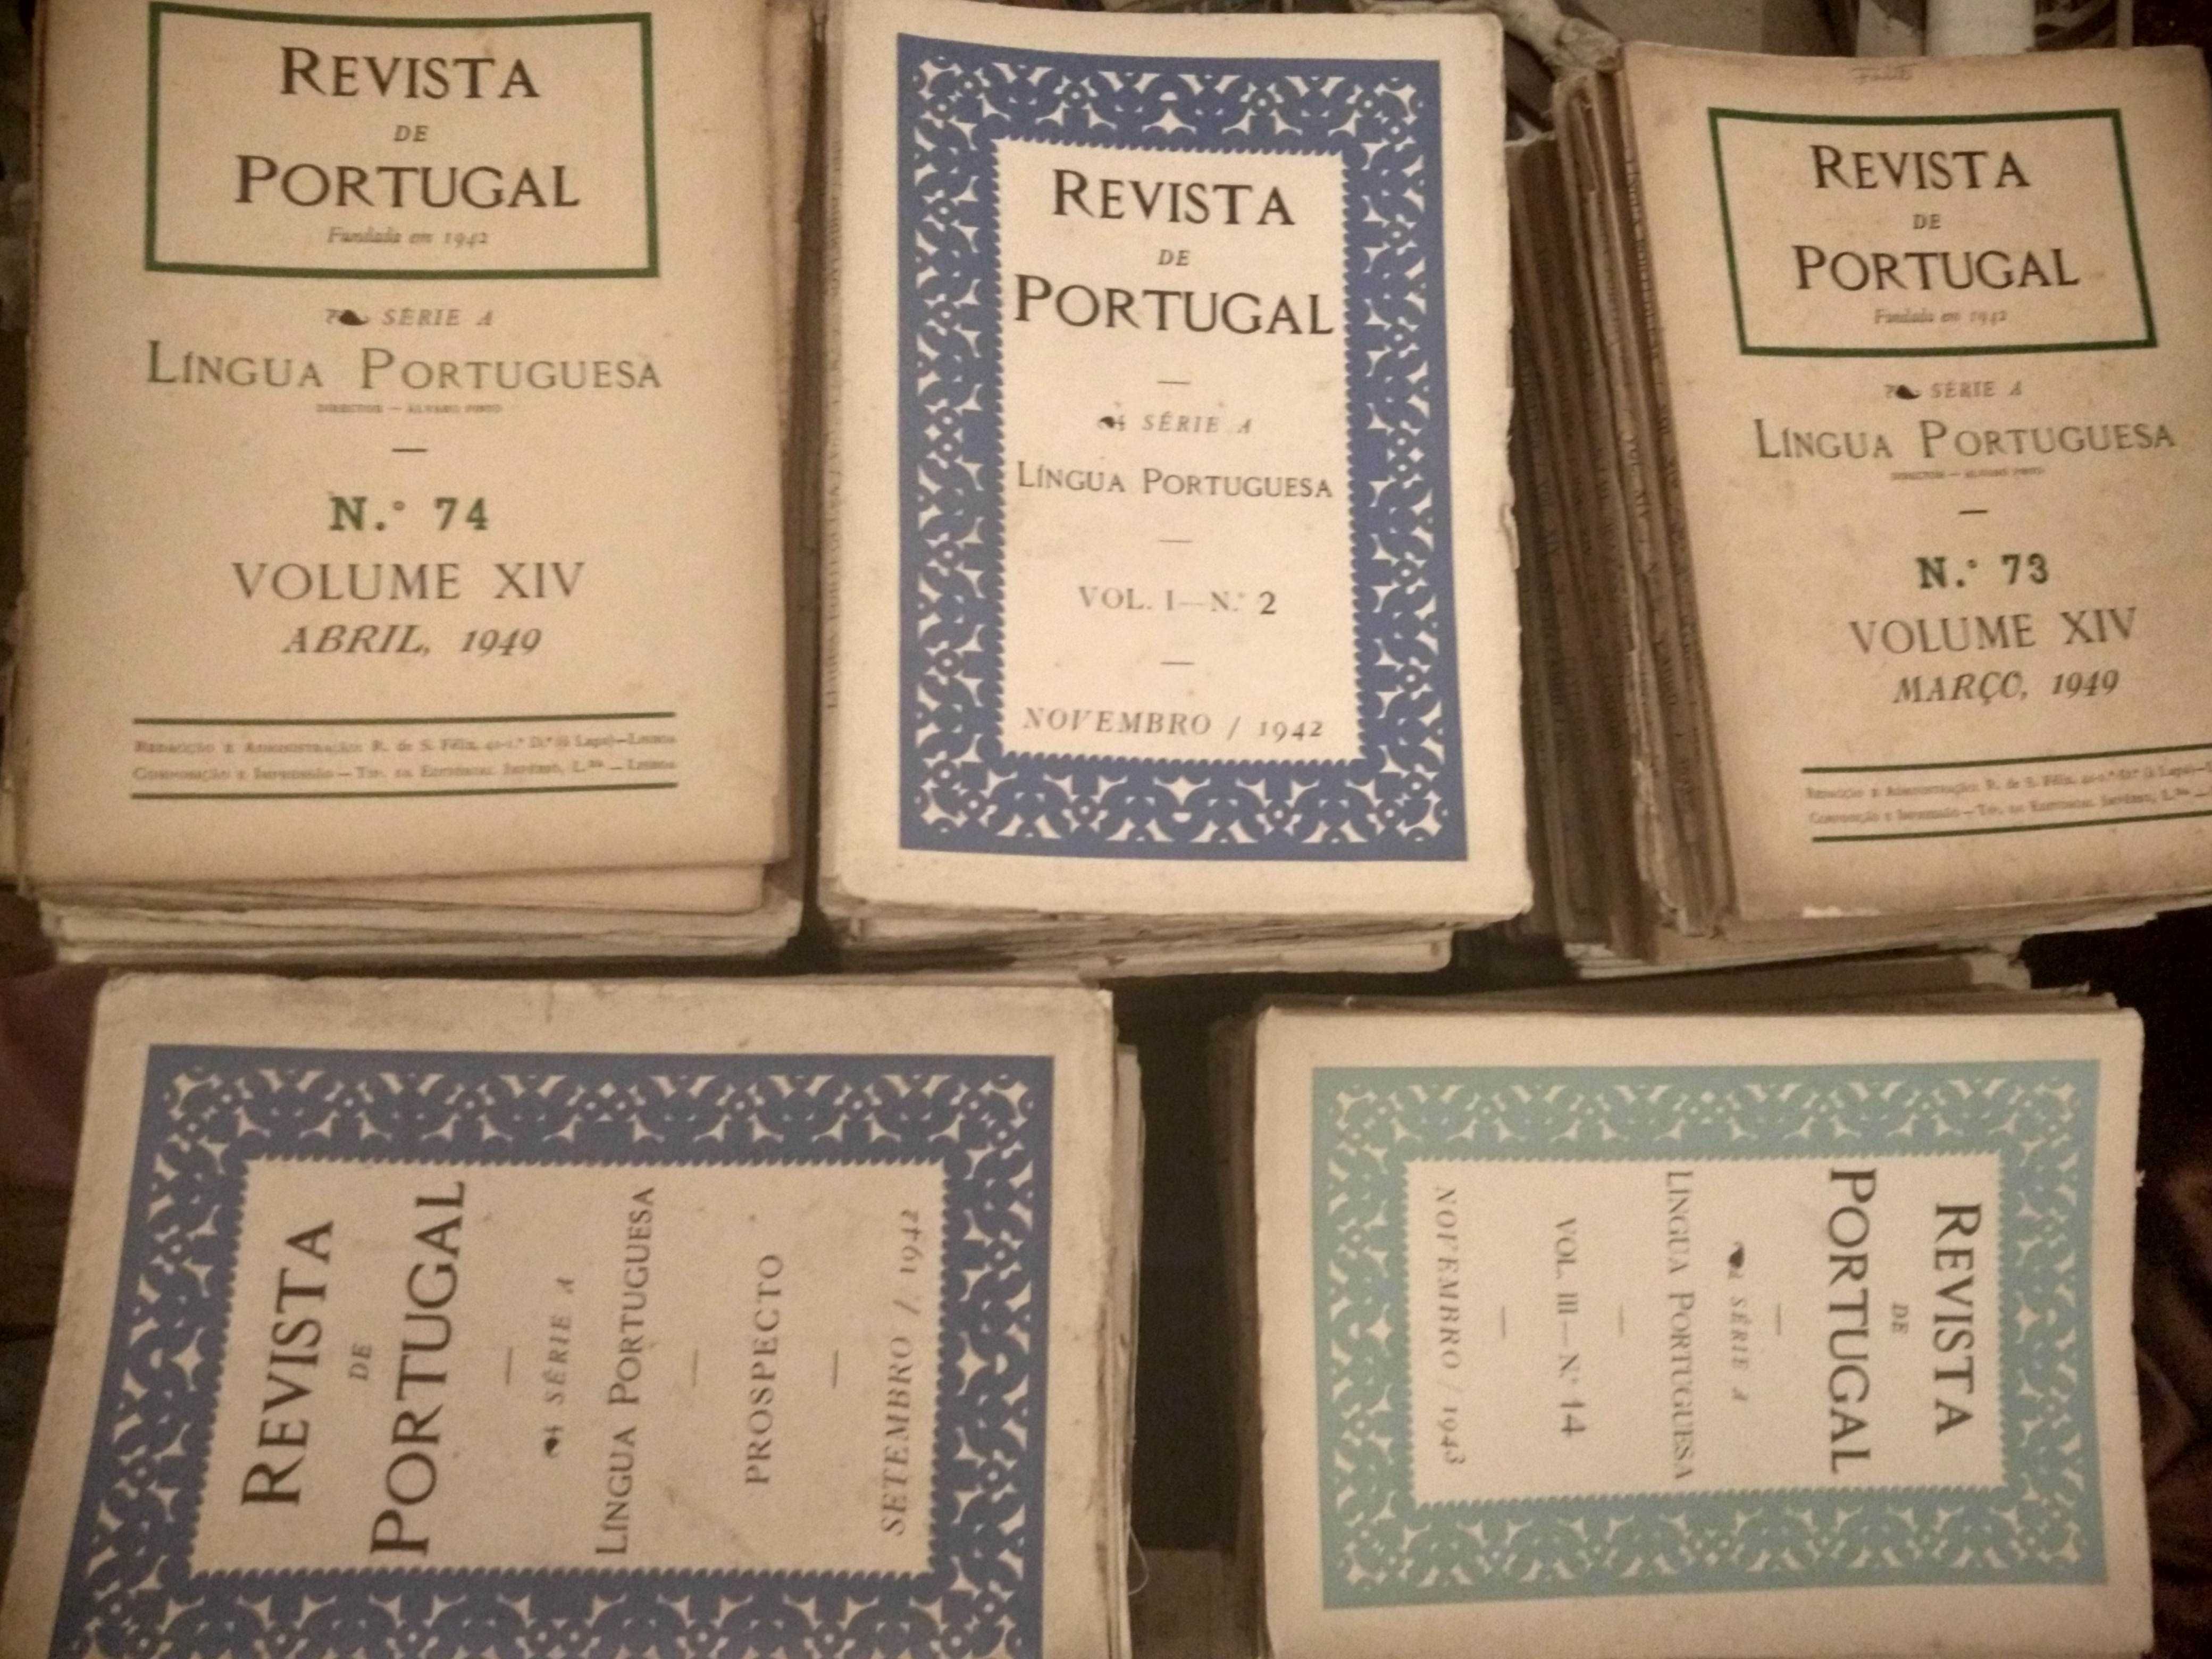 Colecção da "Revista de Portugal" - 1949 a 1969